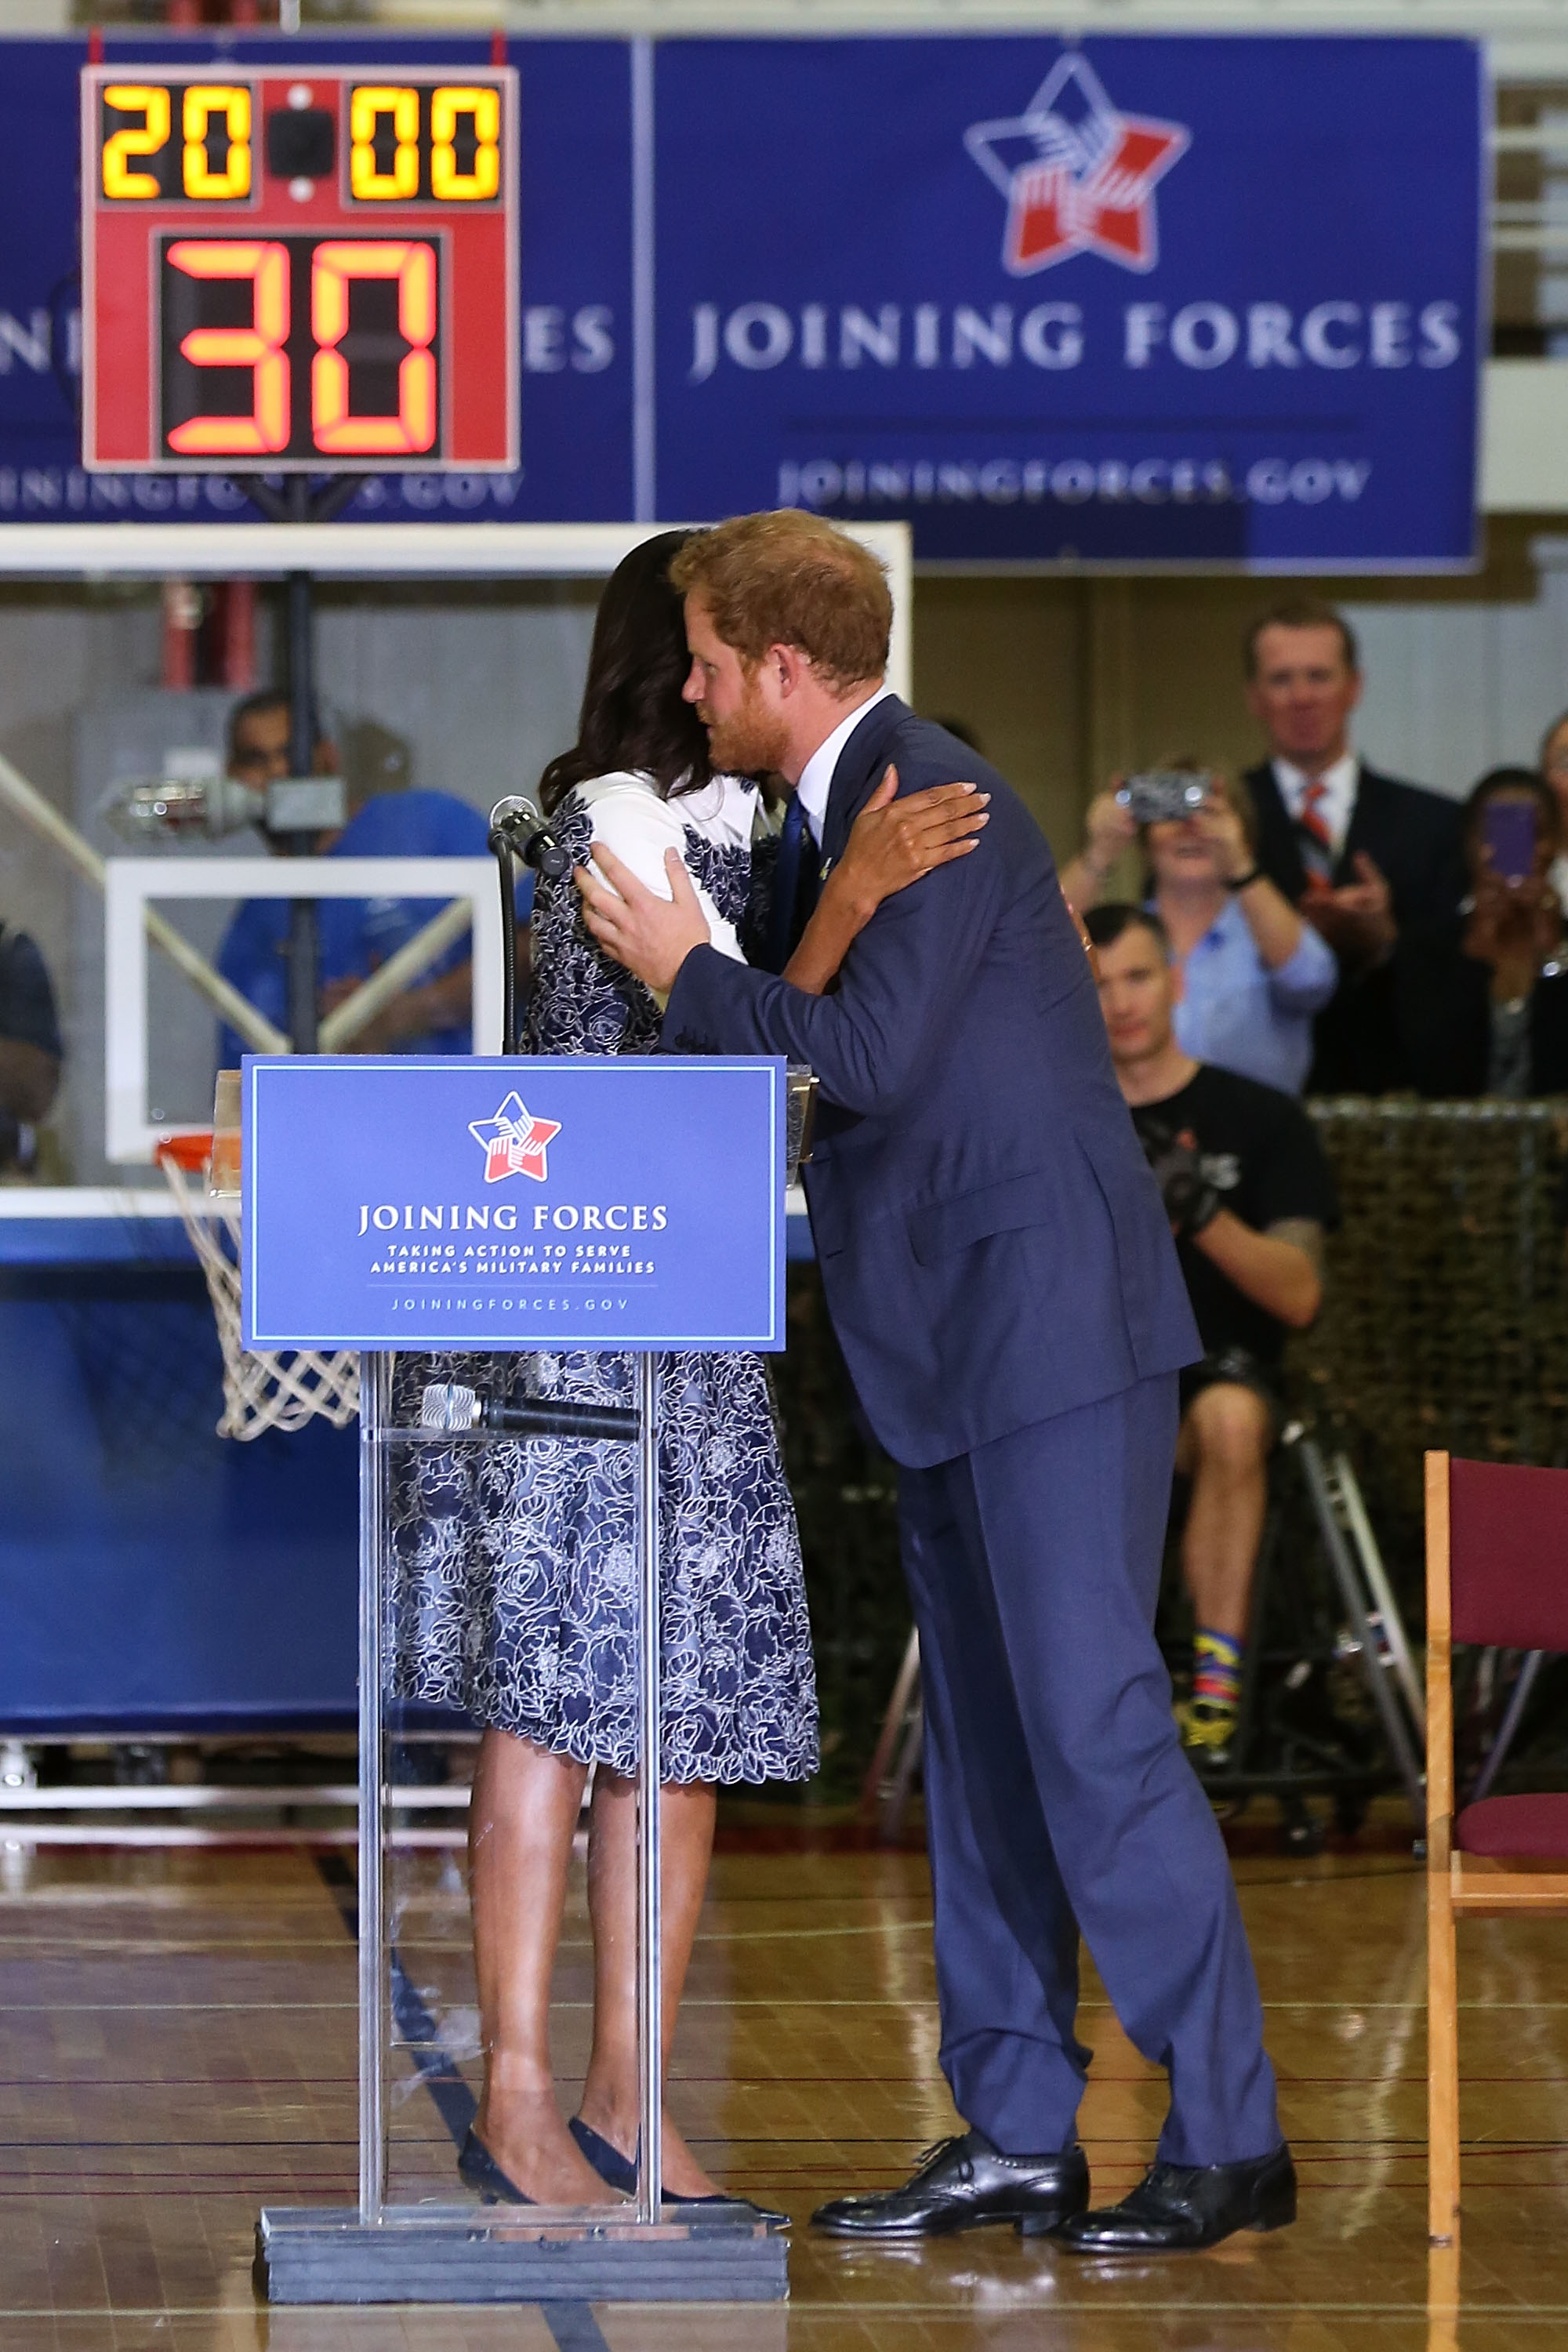 Harry herceg levette a lábáról az elnök feleségét